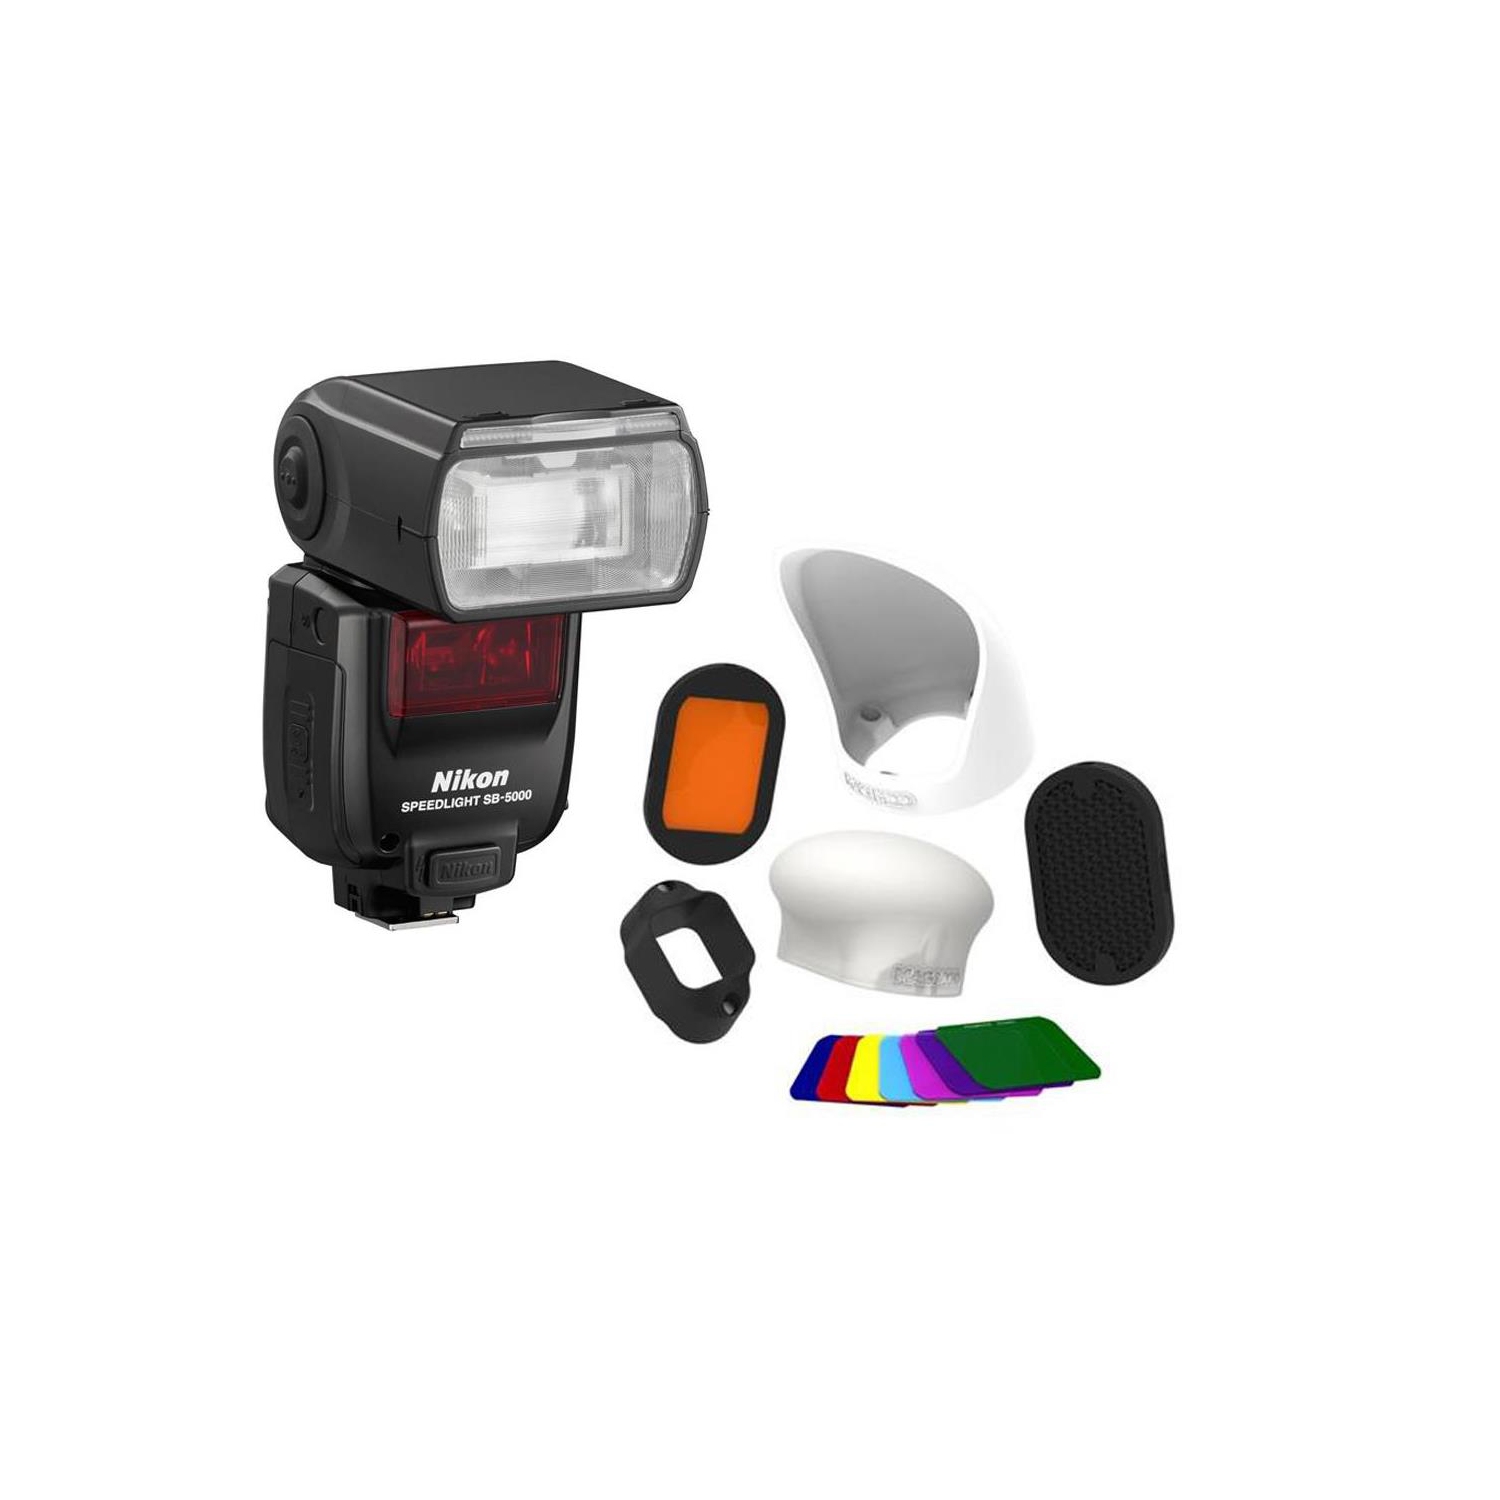 Nikon SB-5000 AF Speedlight With professional filter kit - US Version w/ Seller Warranty